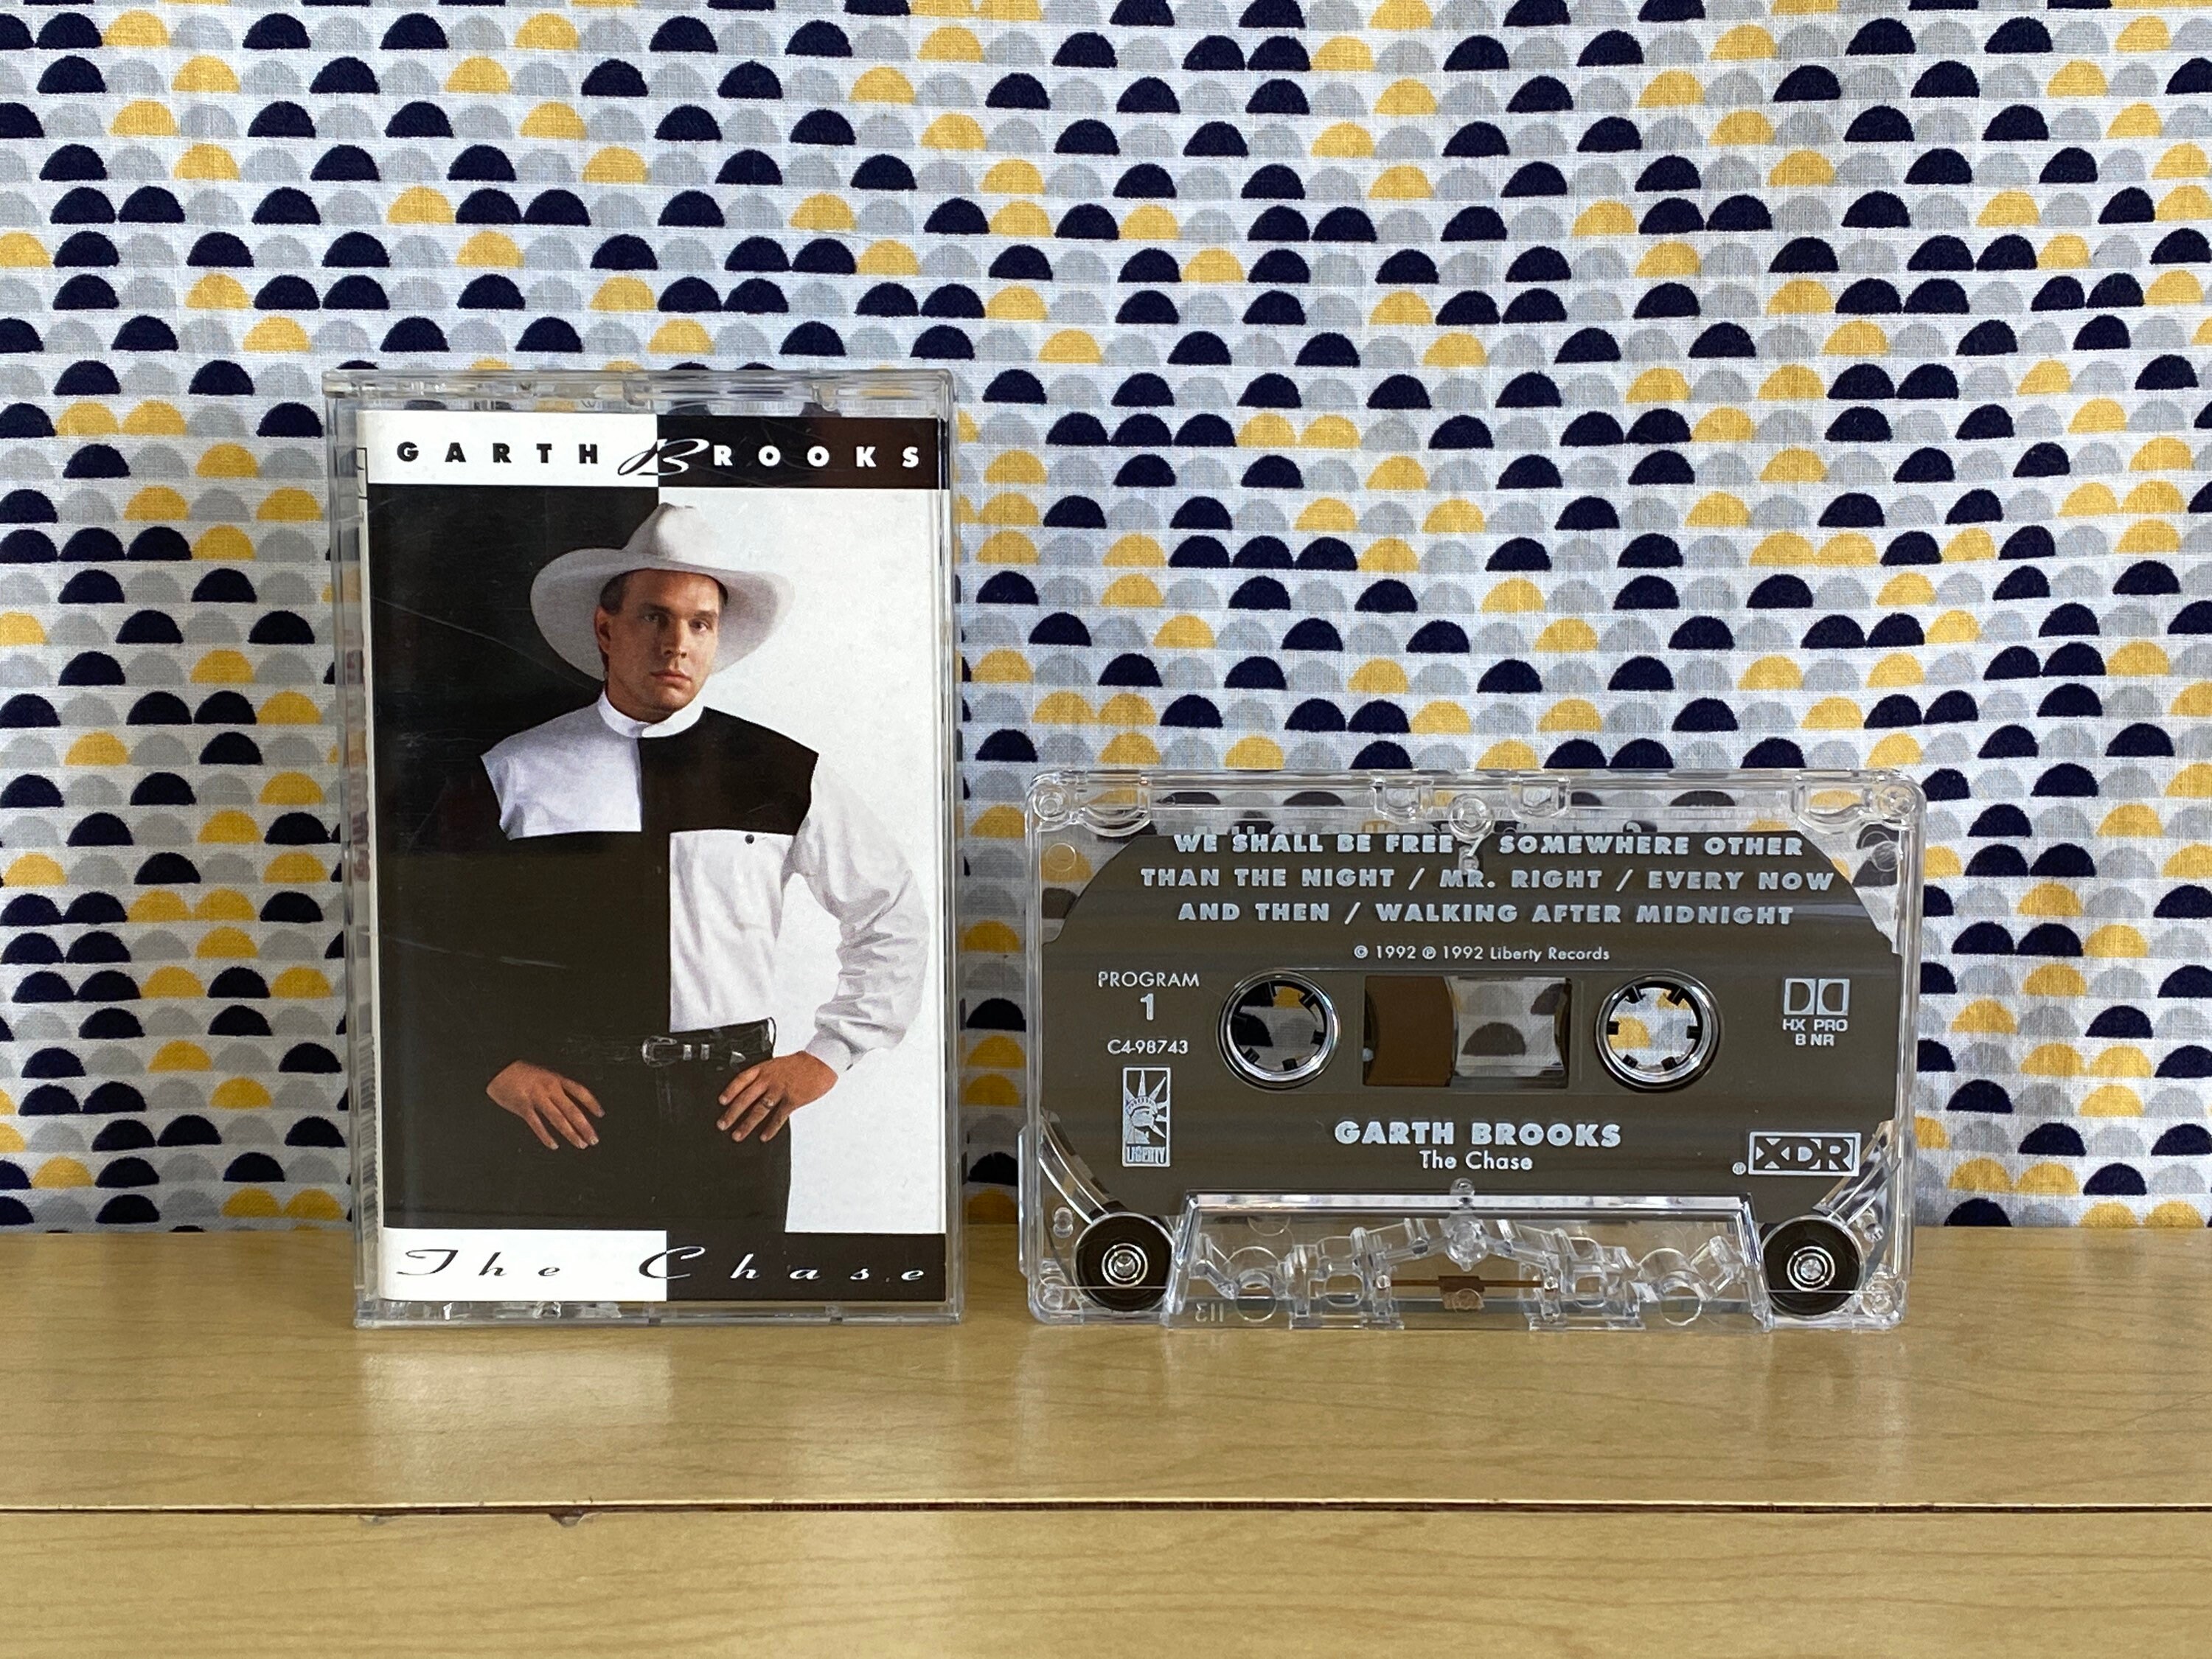 Garth Cassette Tape 